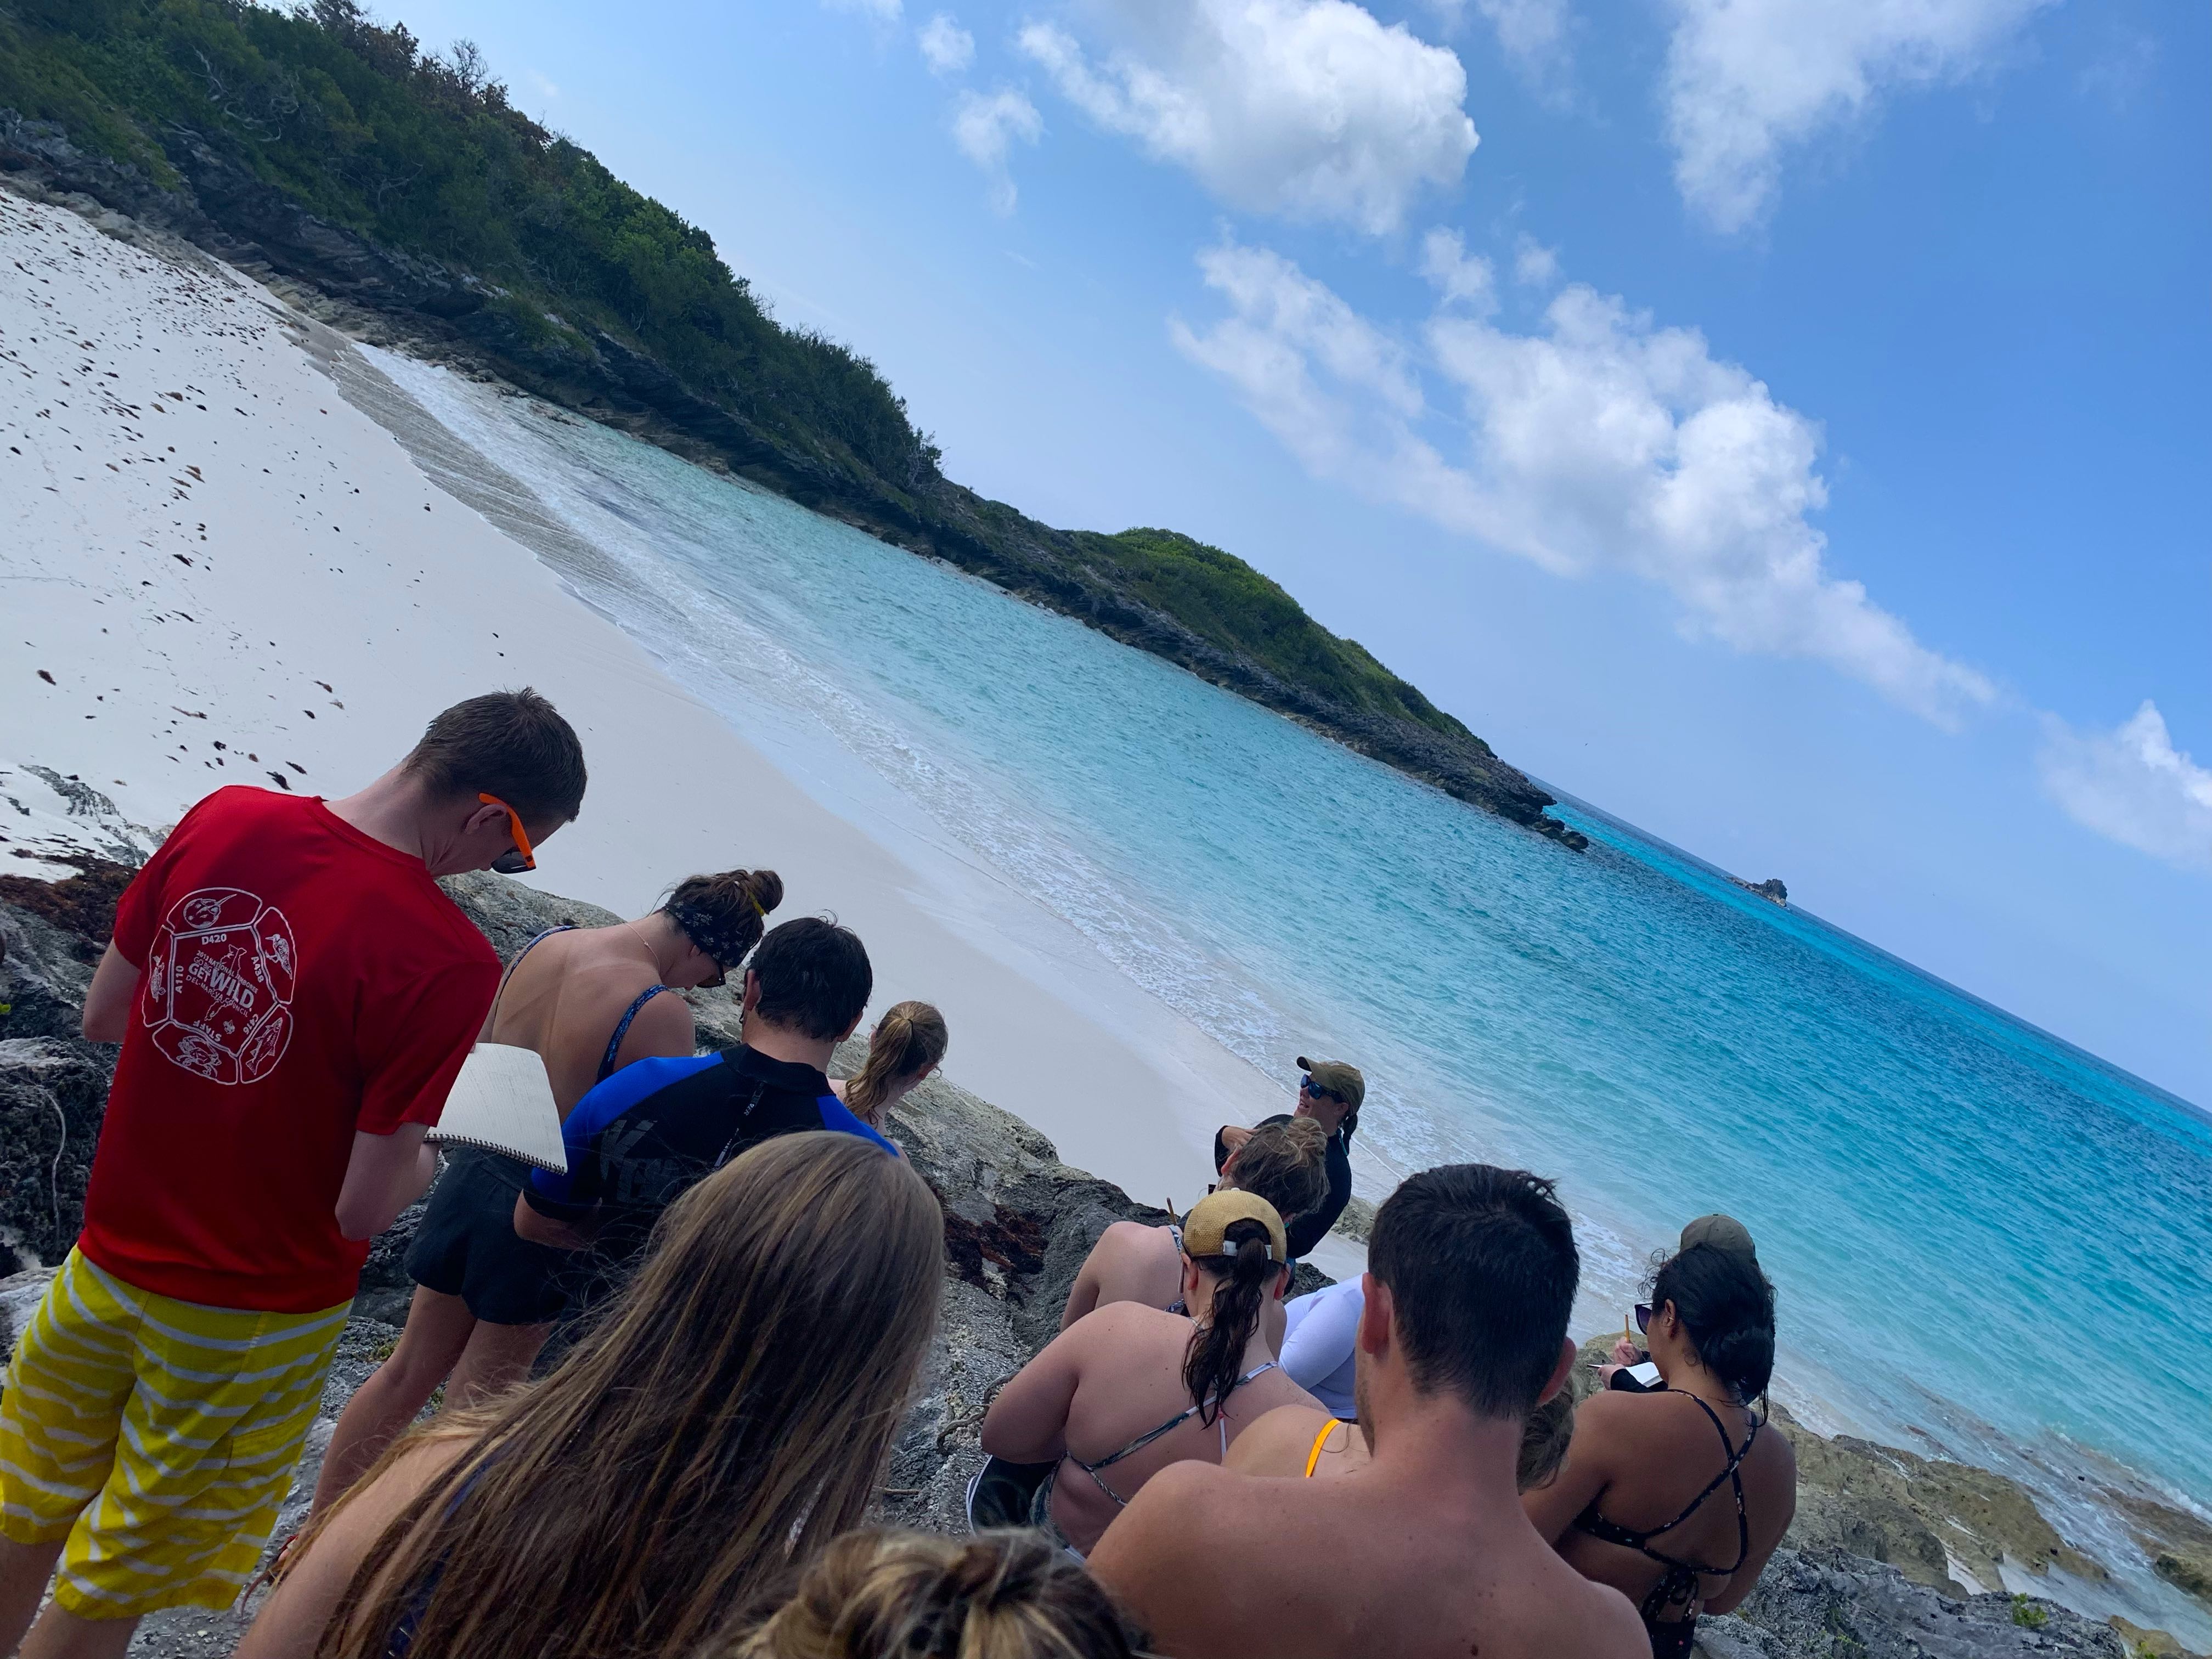 ENV/BIO Bermuda 2019